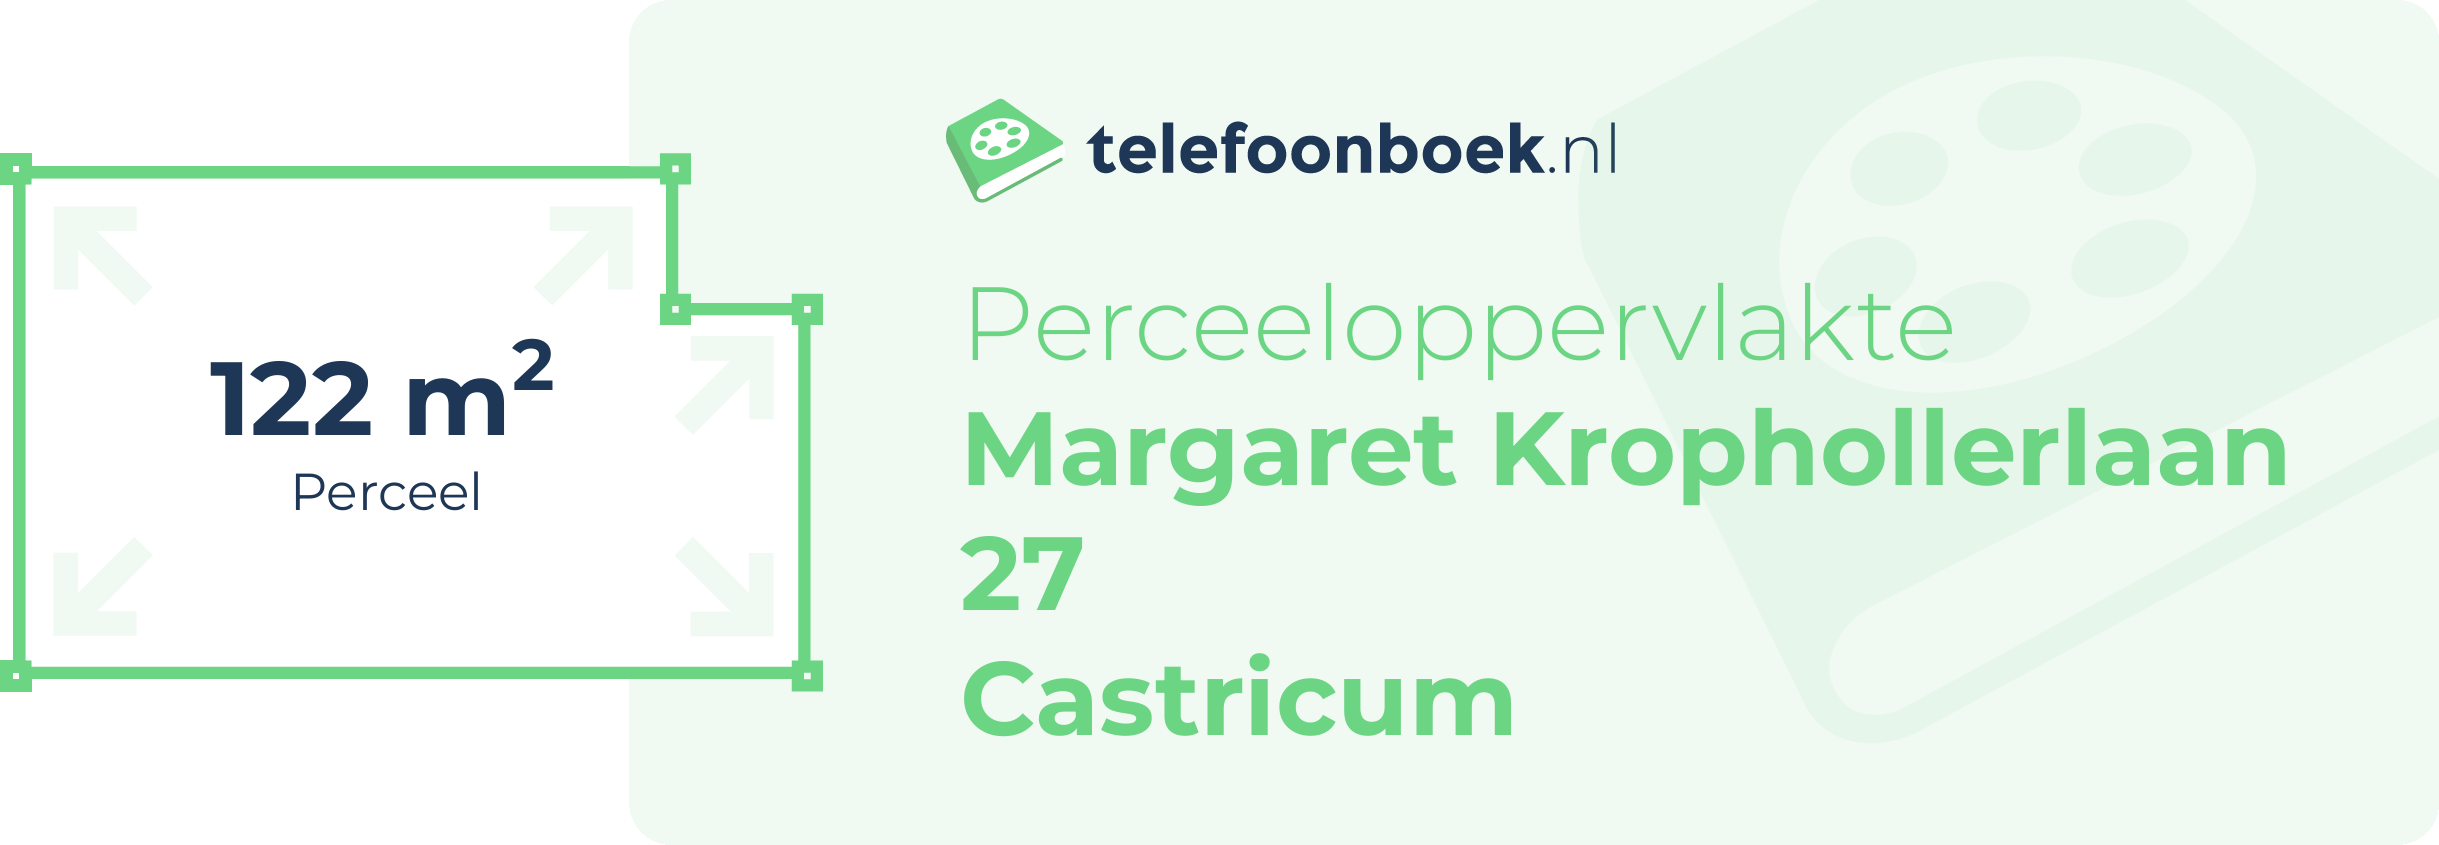 Perceeloppervlakte Margaret Krophollerlaan 27 Castricum